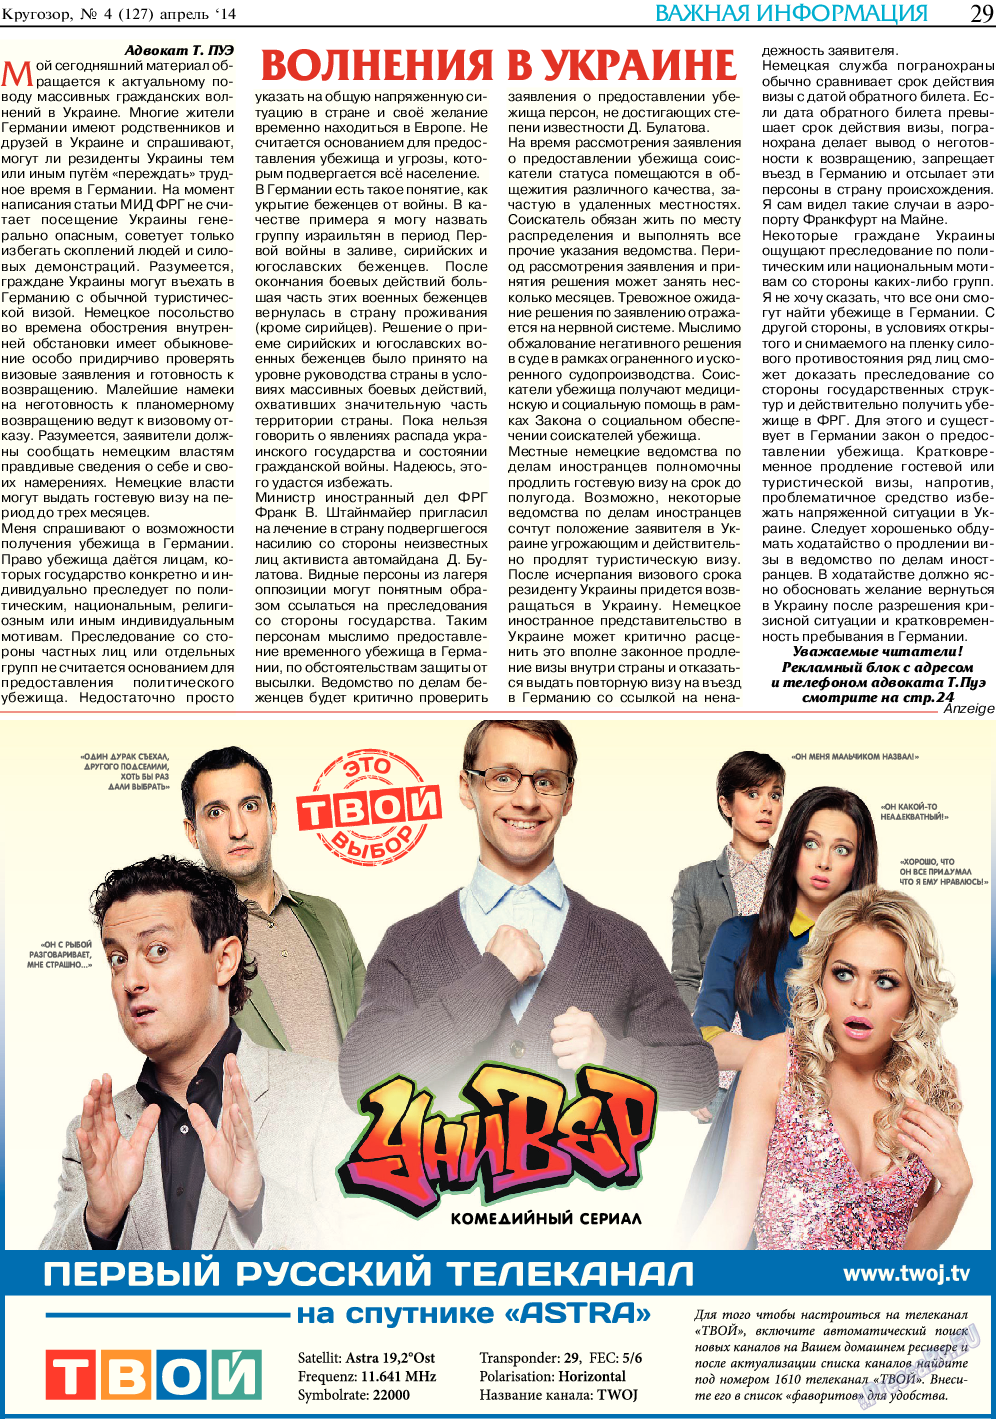 Кругозор (газета). 2014 год, номер 4, стр. 29